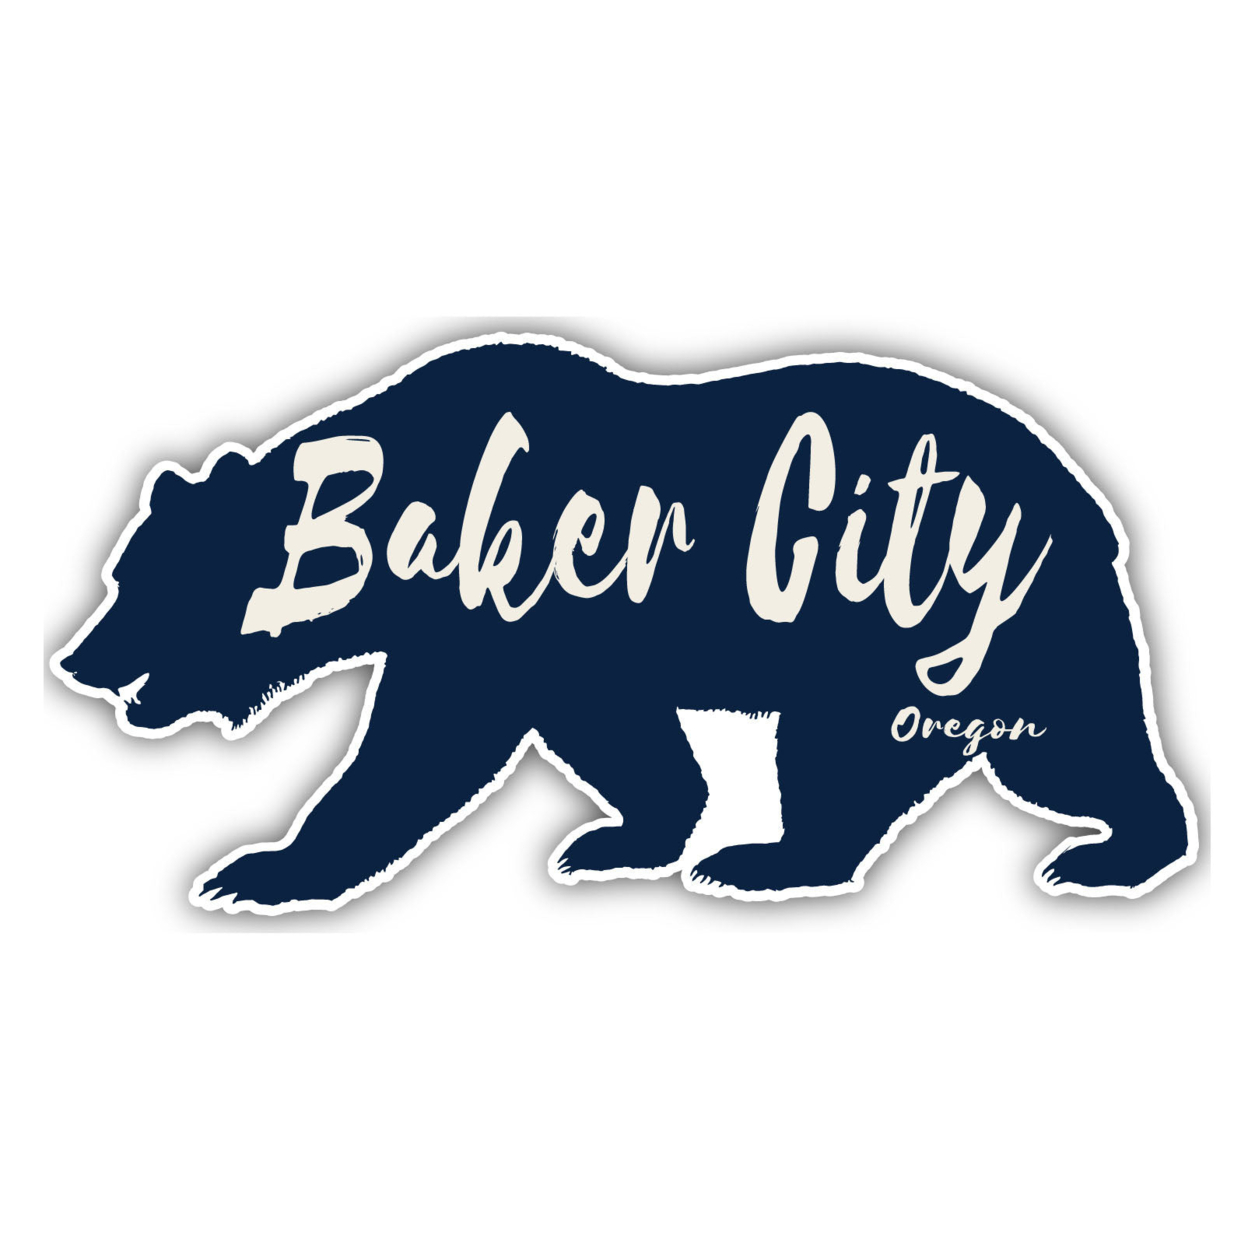 Baker City Oregon Souvenir Decorative Stickers (Choose Theme And Size) - Single Unit, 6-Inch, Tent